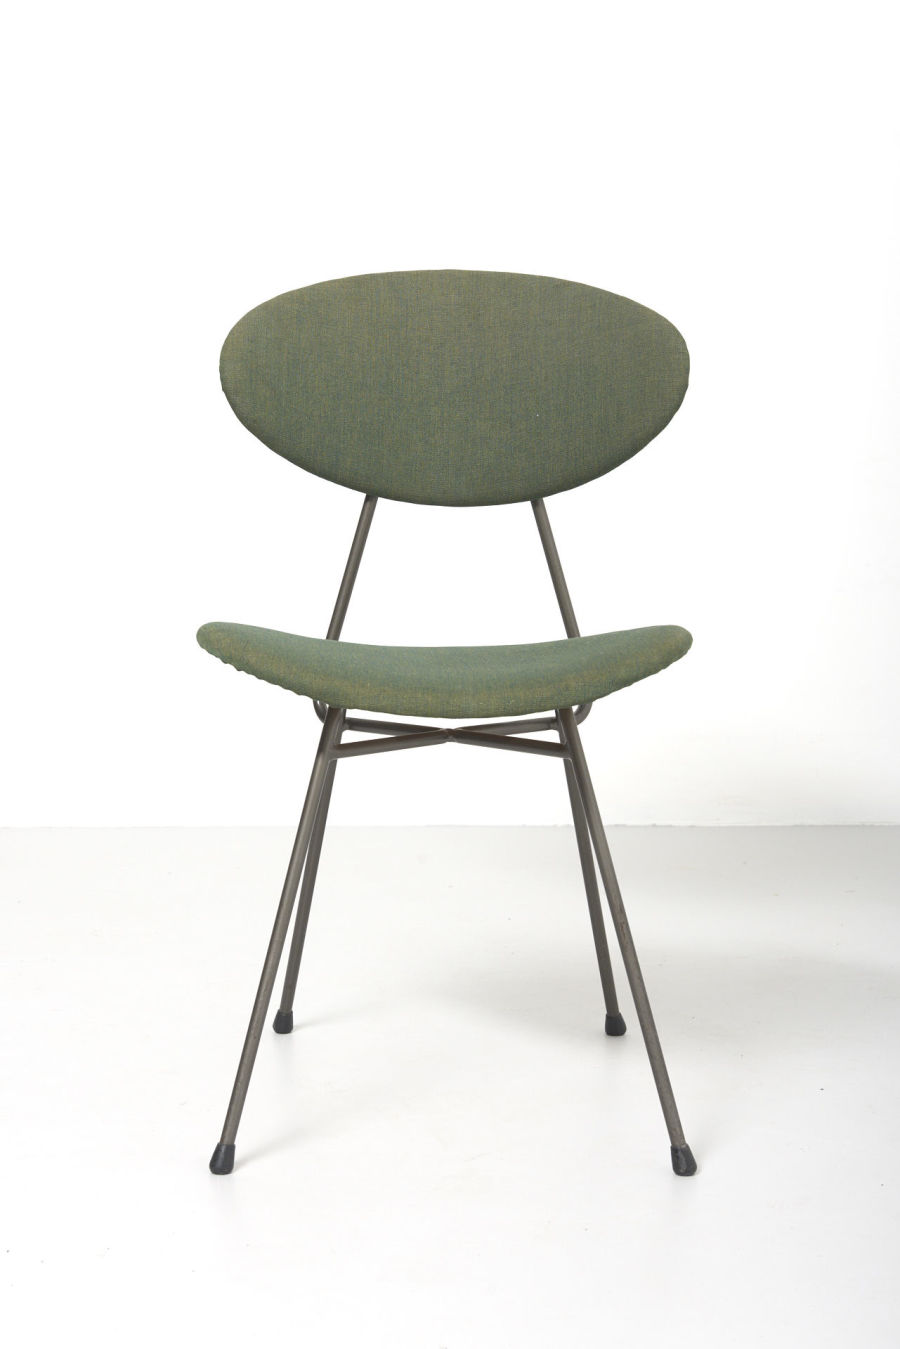 modestfurniture-vintage-2622-staatsmijnen-dining-chair-rob-parry-emile-truijen01